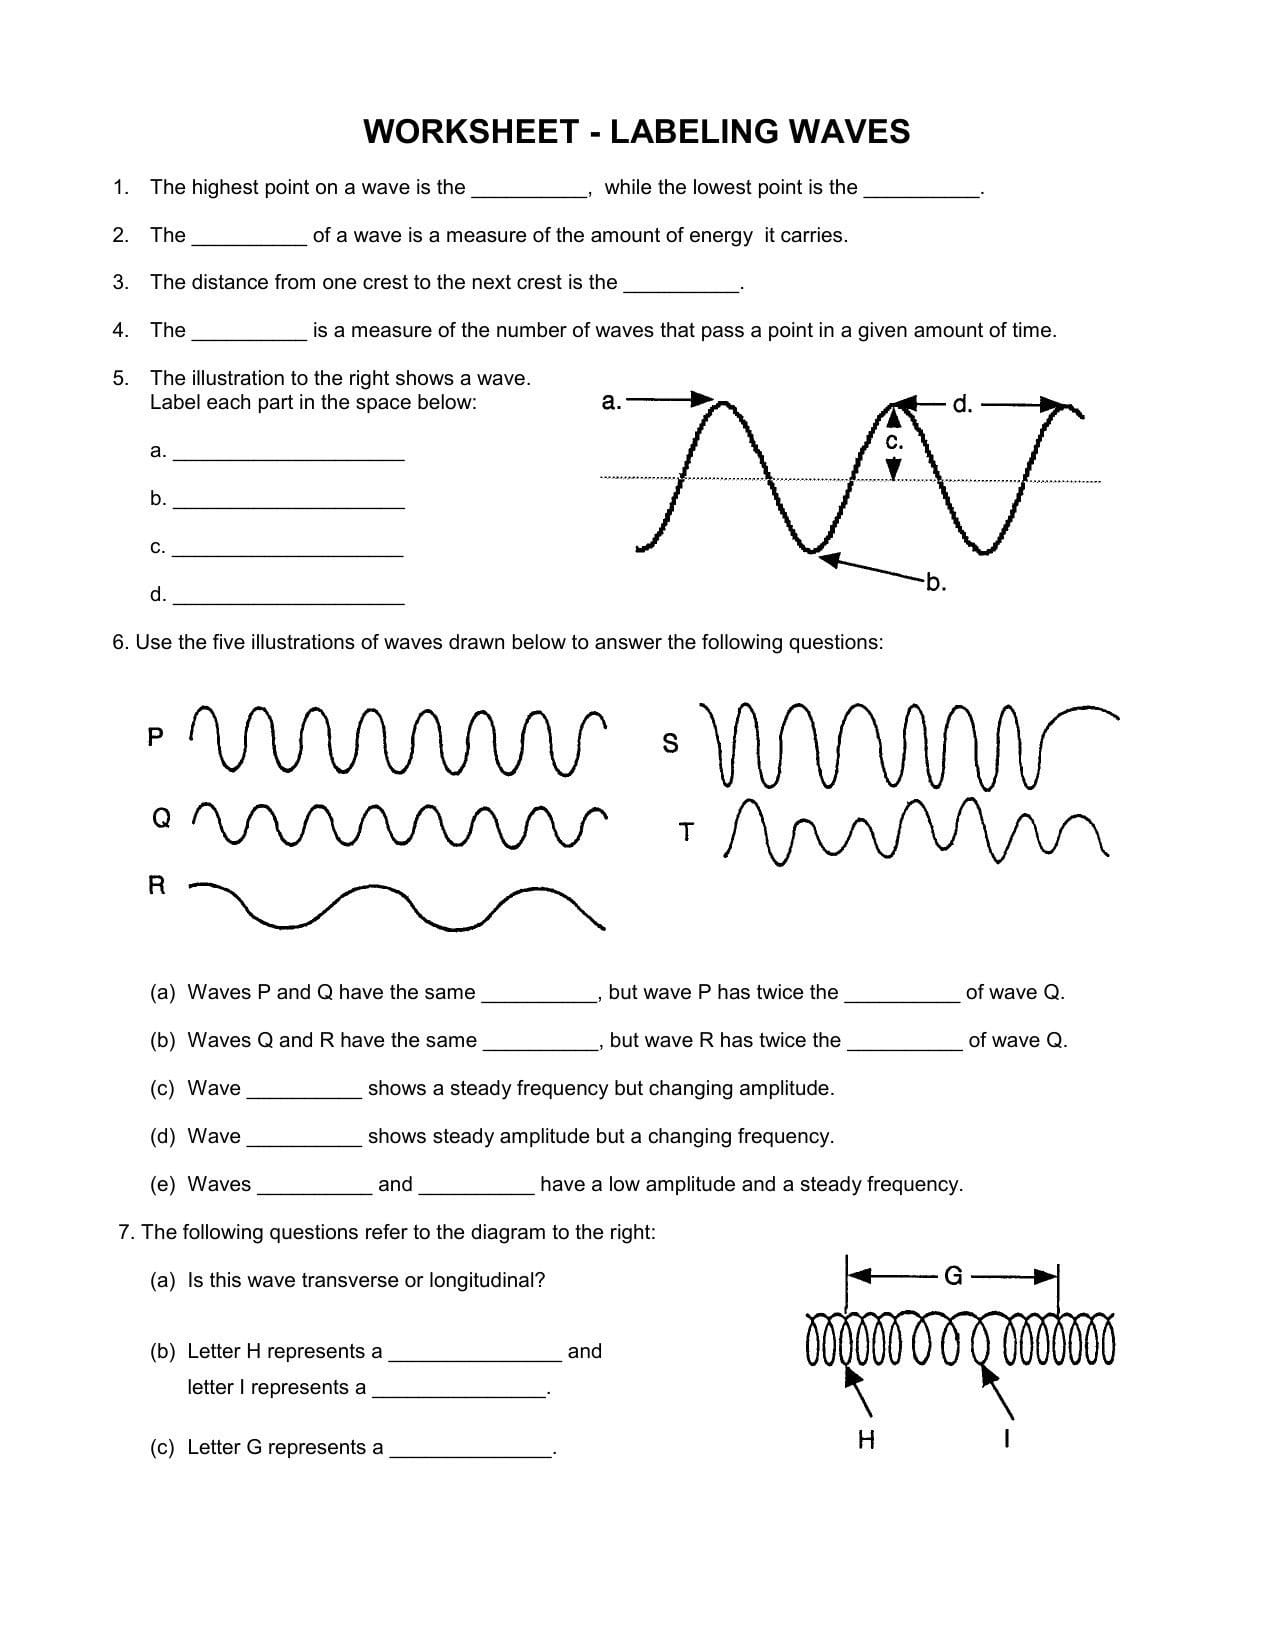 Waves Worksheet Answer Key Physics  Briefencounters Inside Waves Worksheet Answer Key Physics